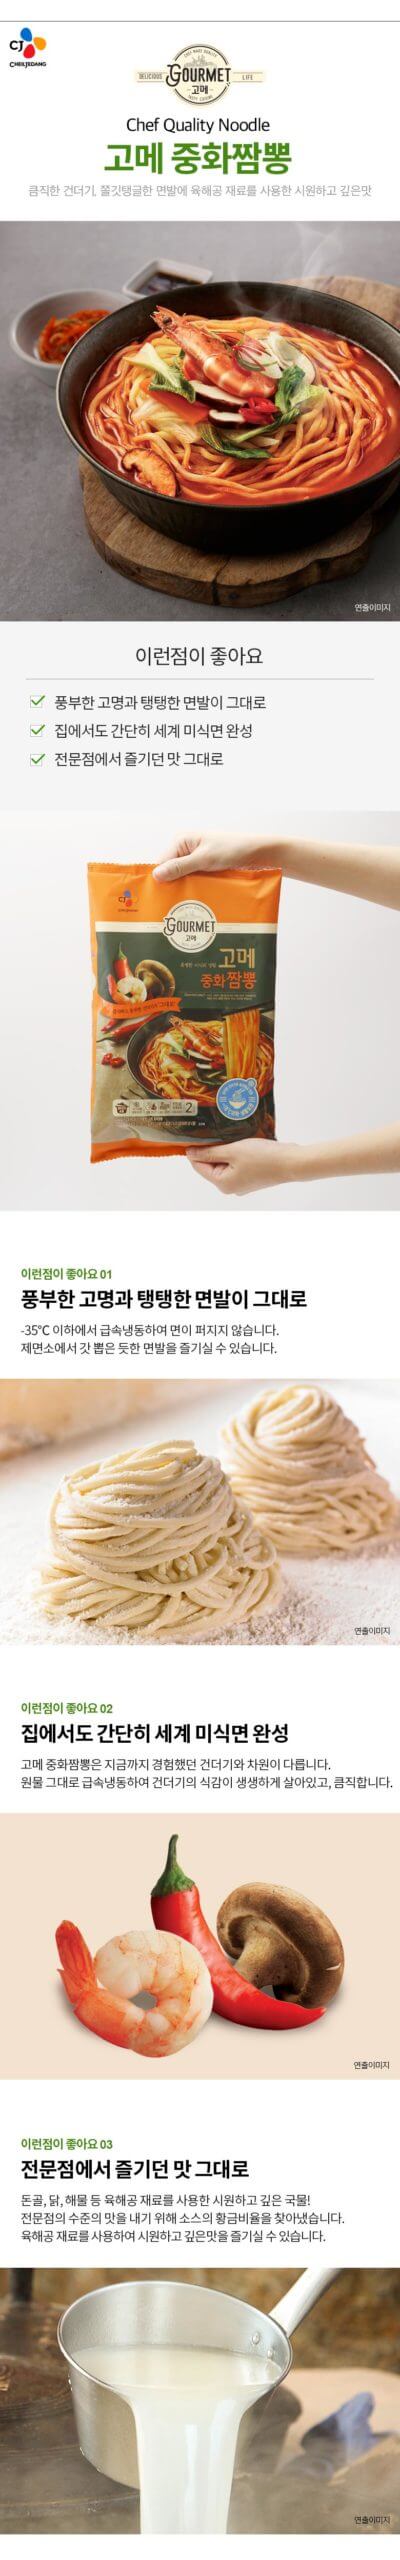 韓國食品-[CJ] 고메중화짬뽕 652g